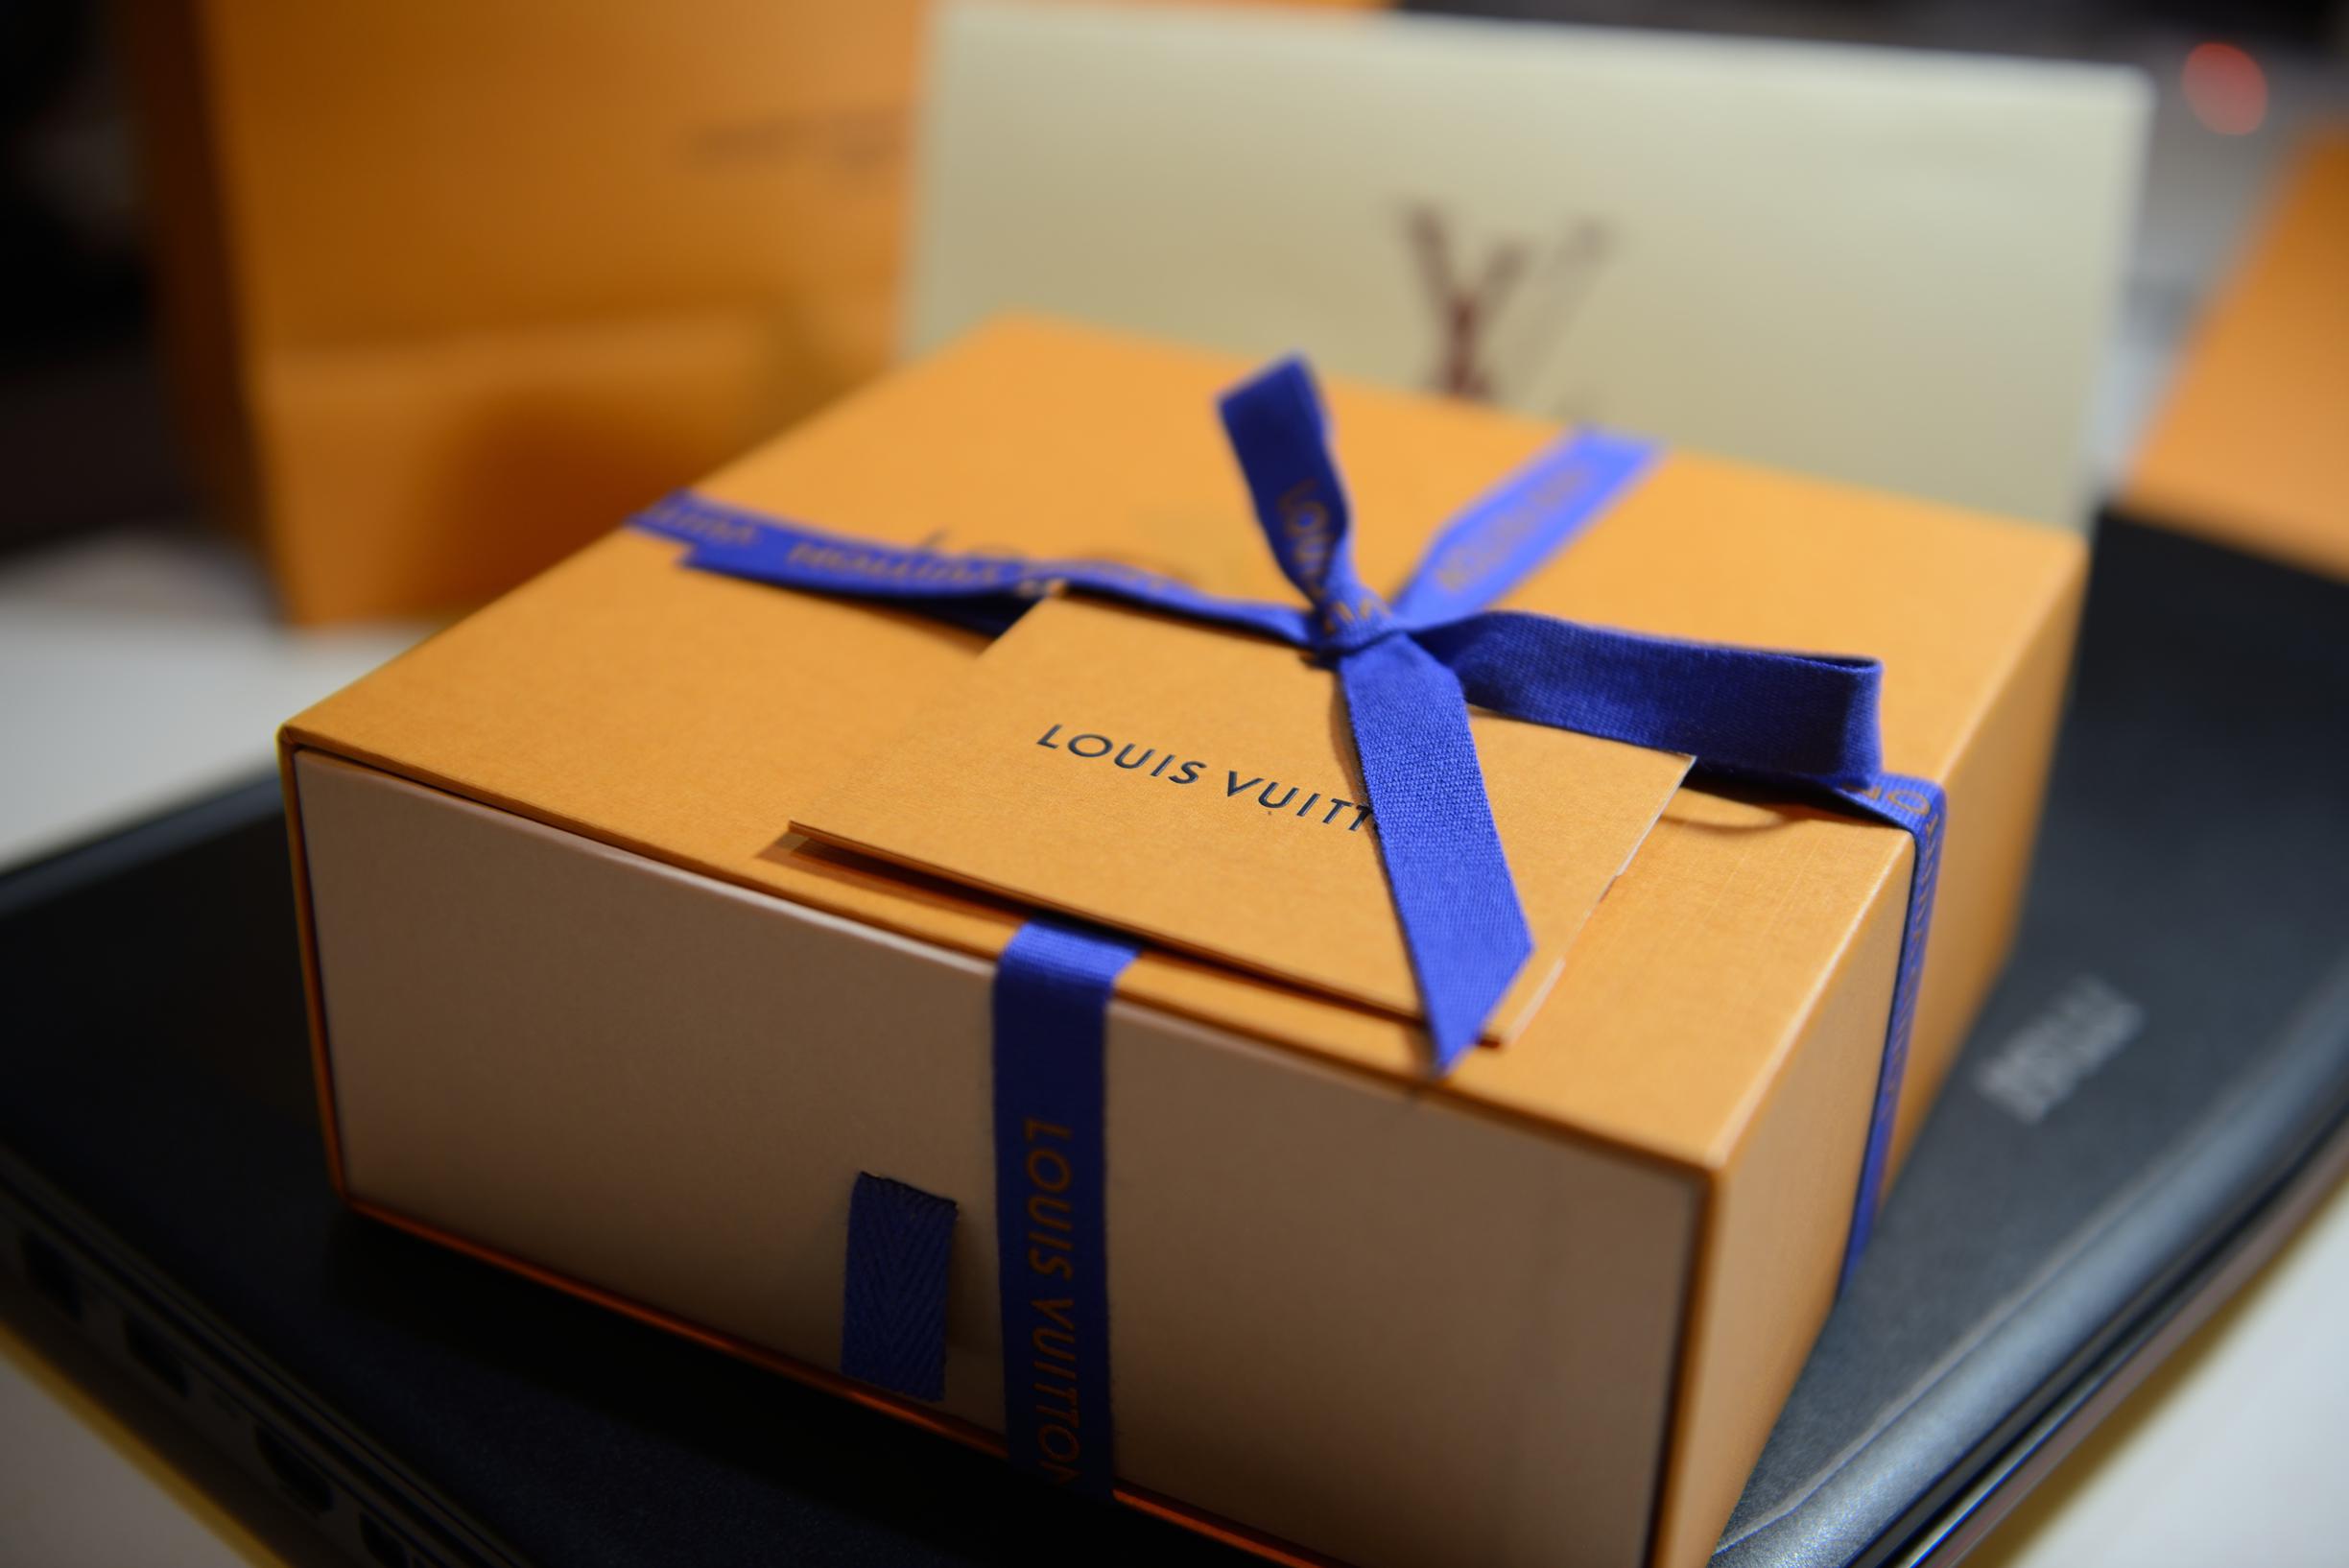 Louis Vuitton brengt ook in 2022 een ode aan Knokke met eigen handtas